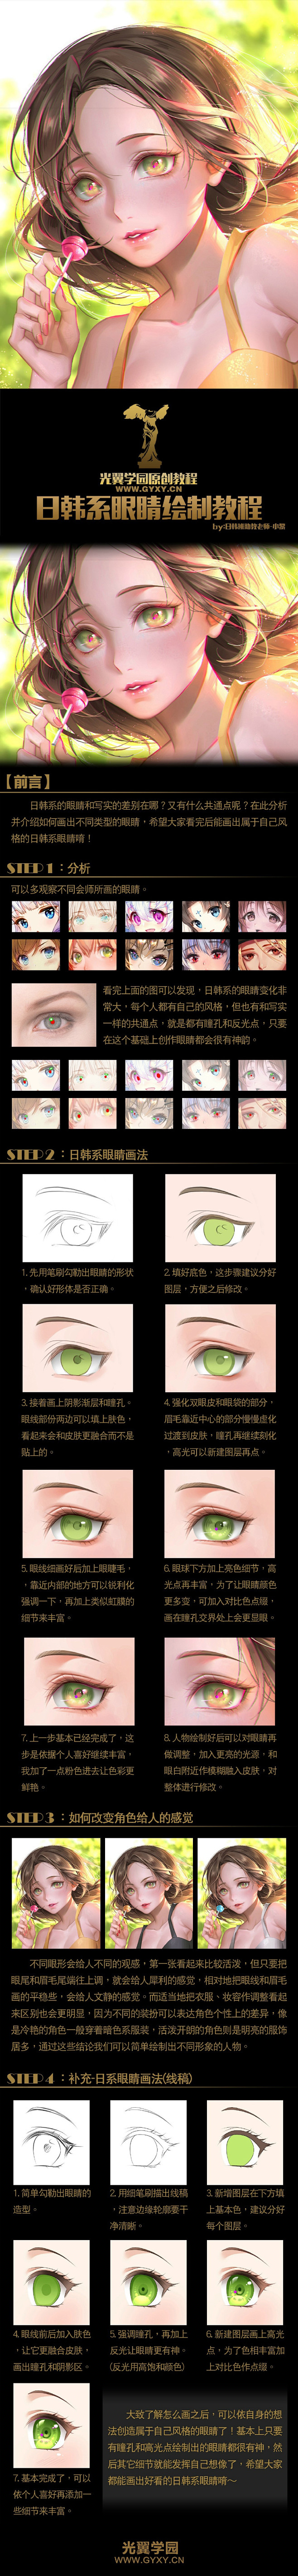 日韩风格眼睛绘制过程